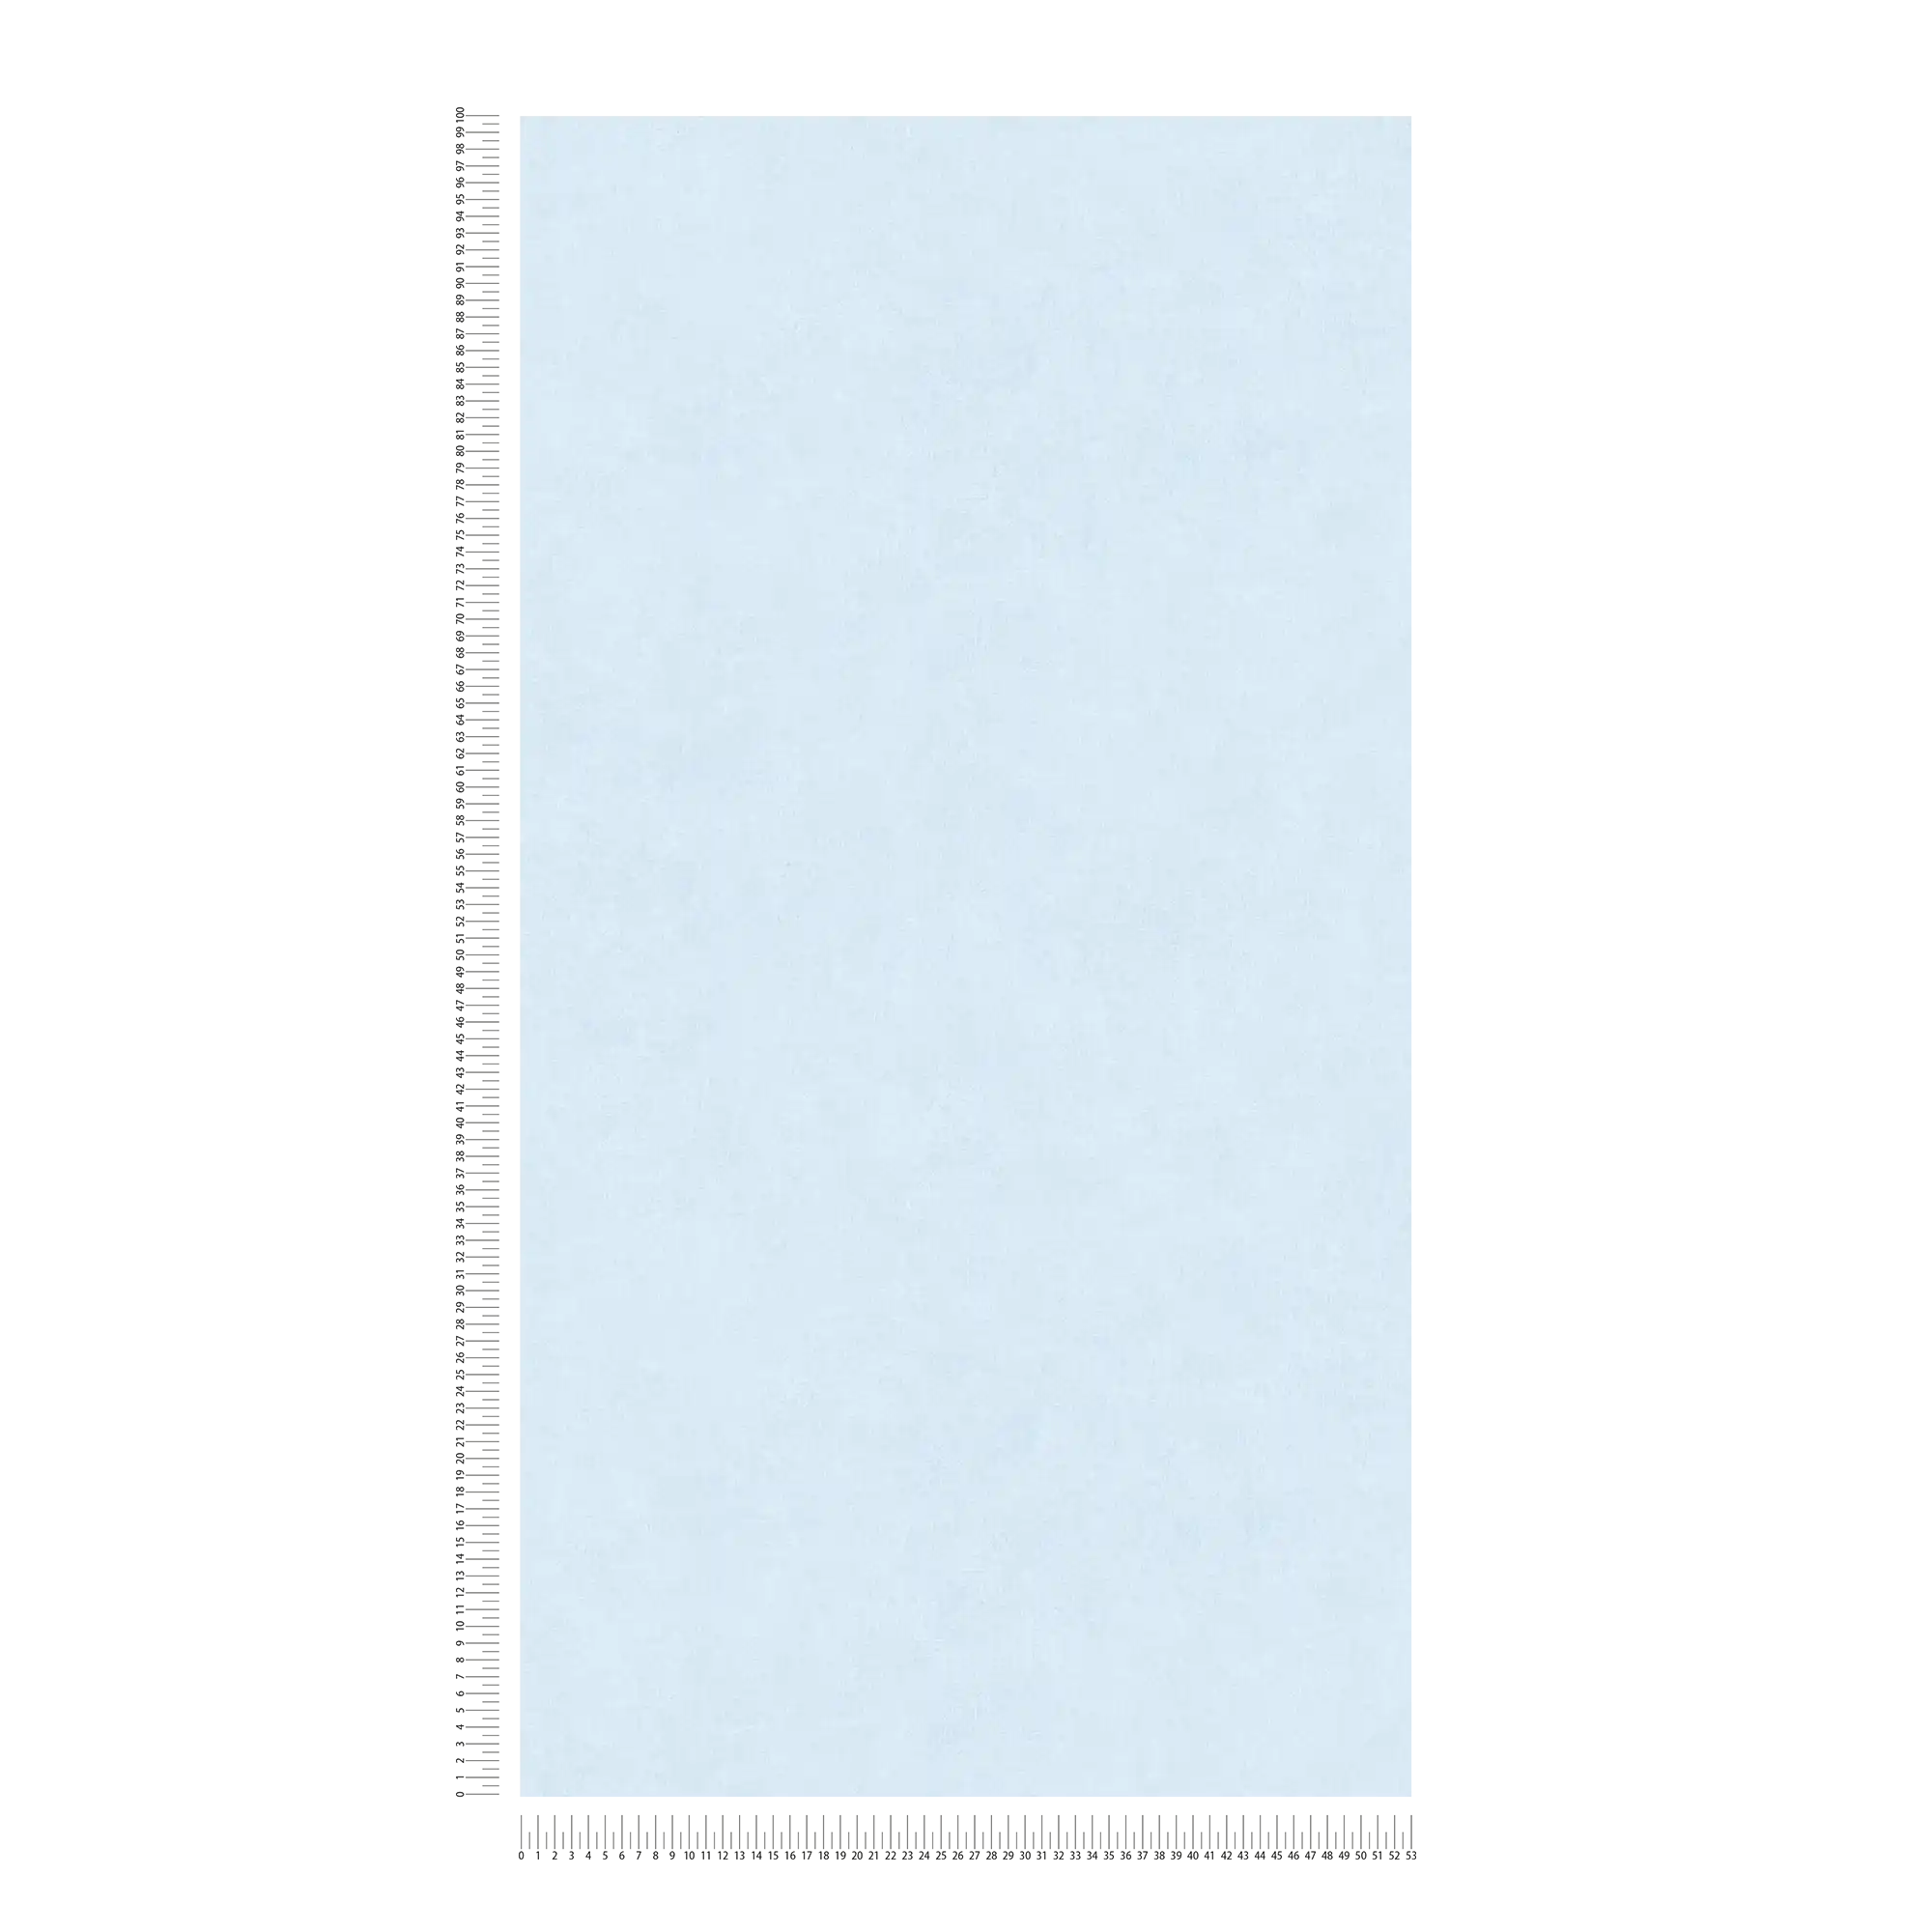             Carta da parati unitaria con un sottile motivo cromatico in look used - bianco, blu
        